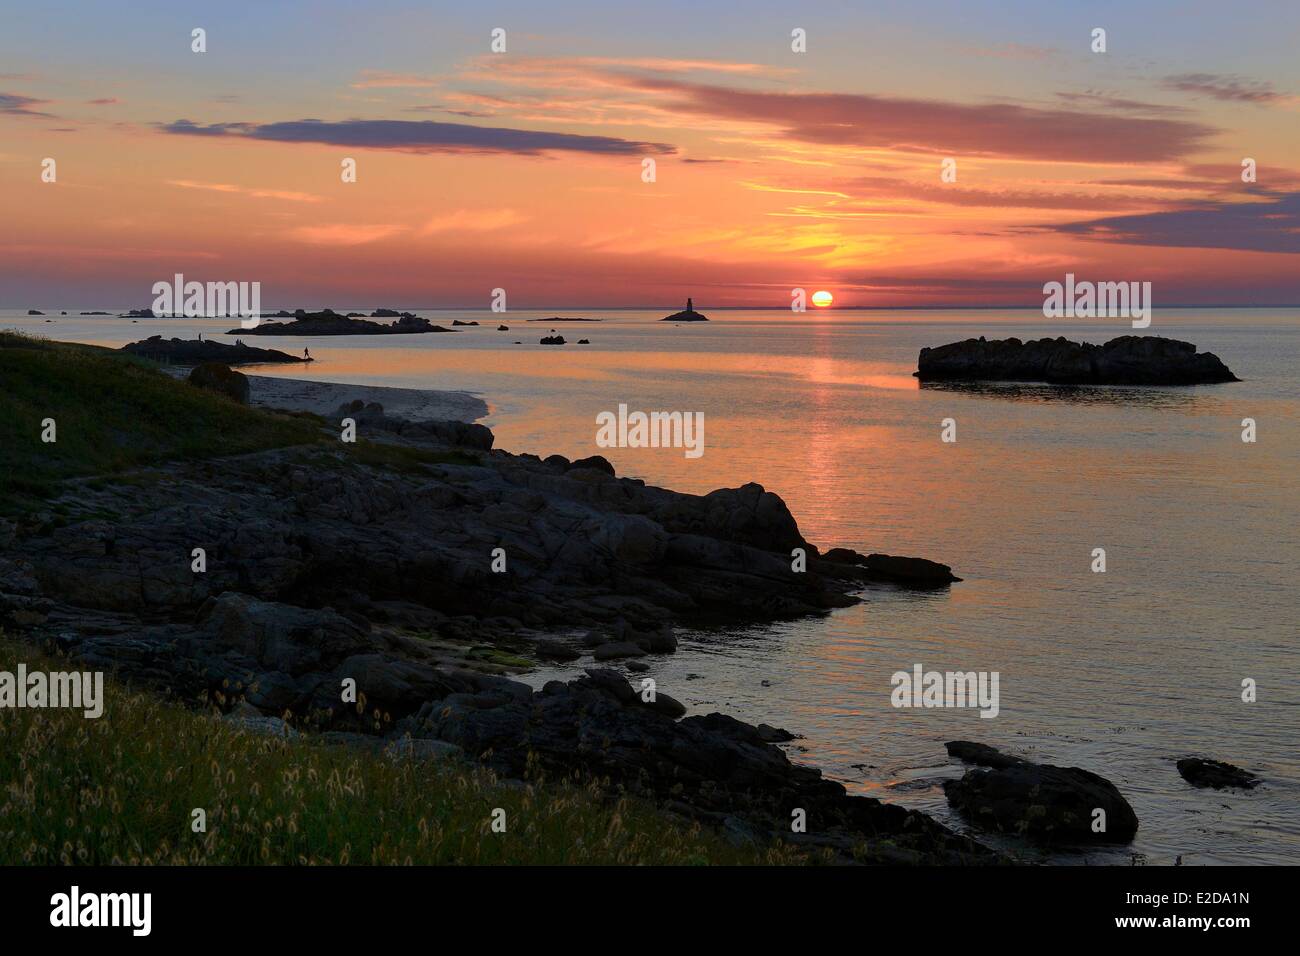 La FORET FOUESNANT Finistère France Îles Glénan île St Nicolas coucher du soleil sur la côte ouest et l'ancien phare Huic Banque D'Images